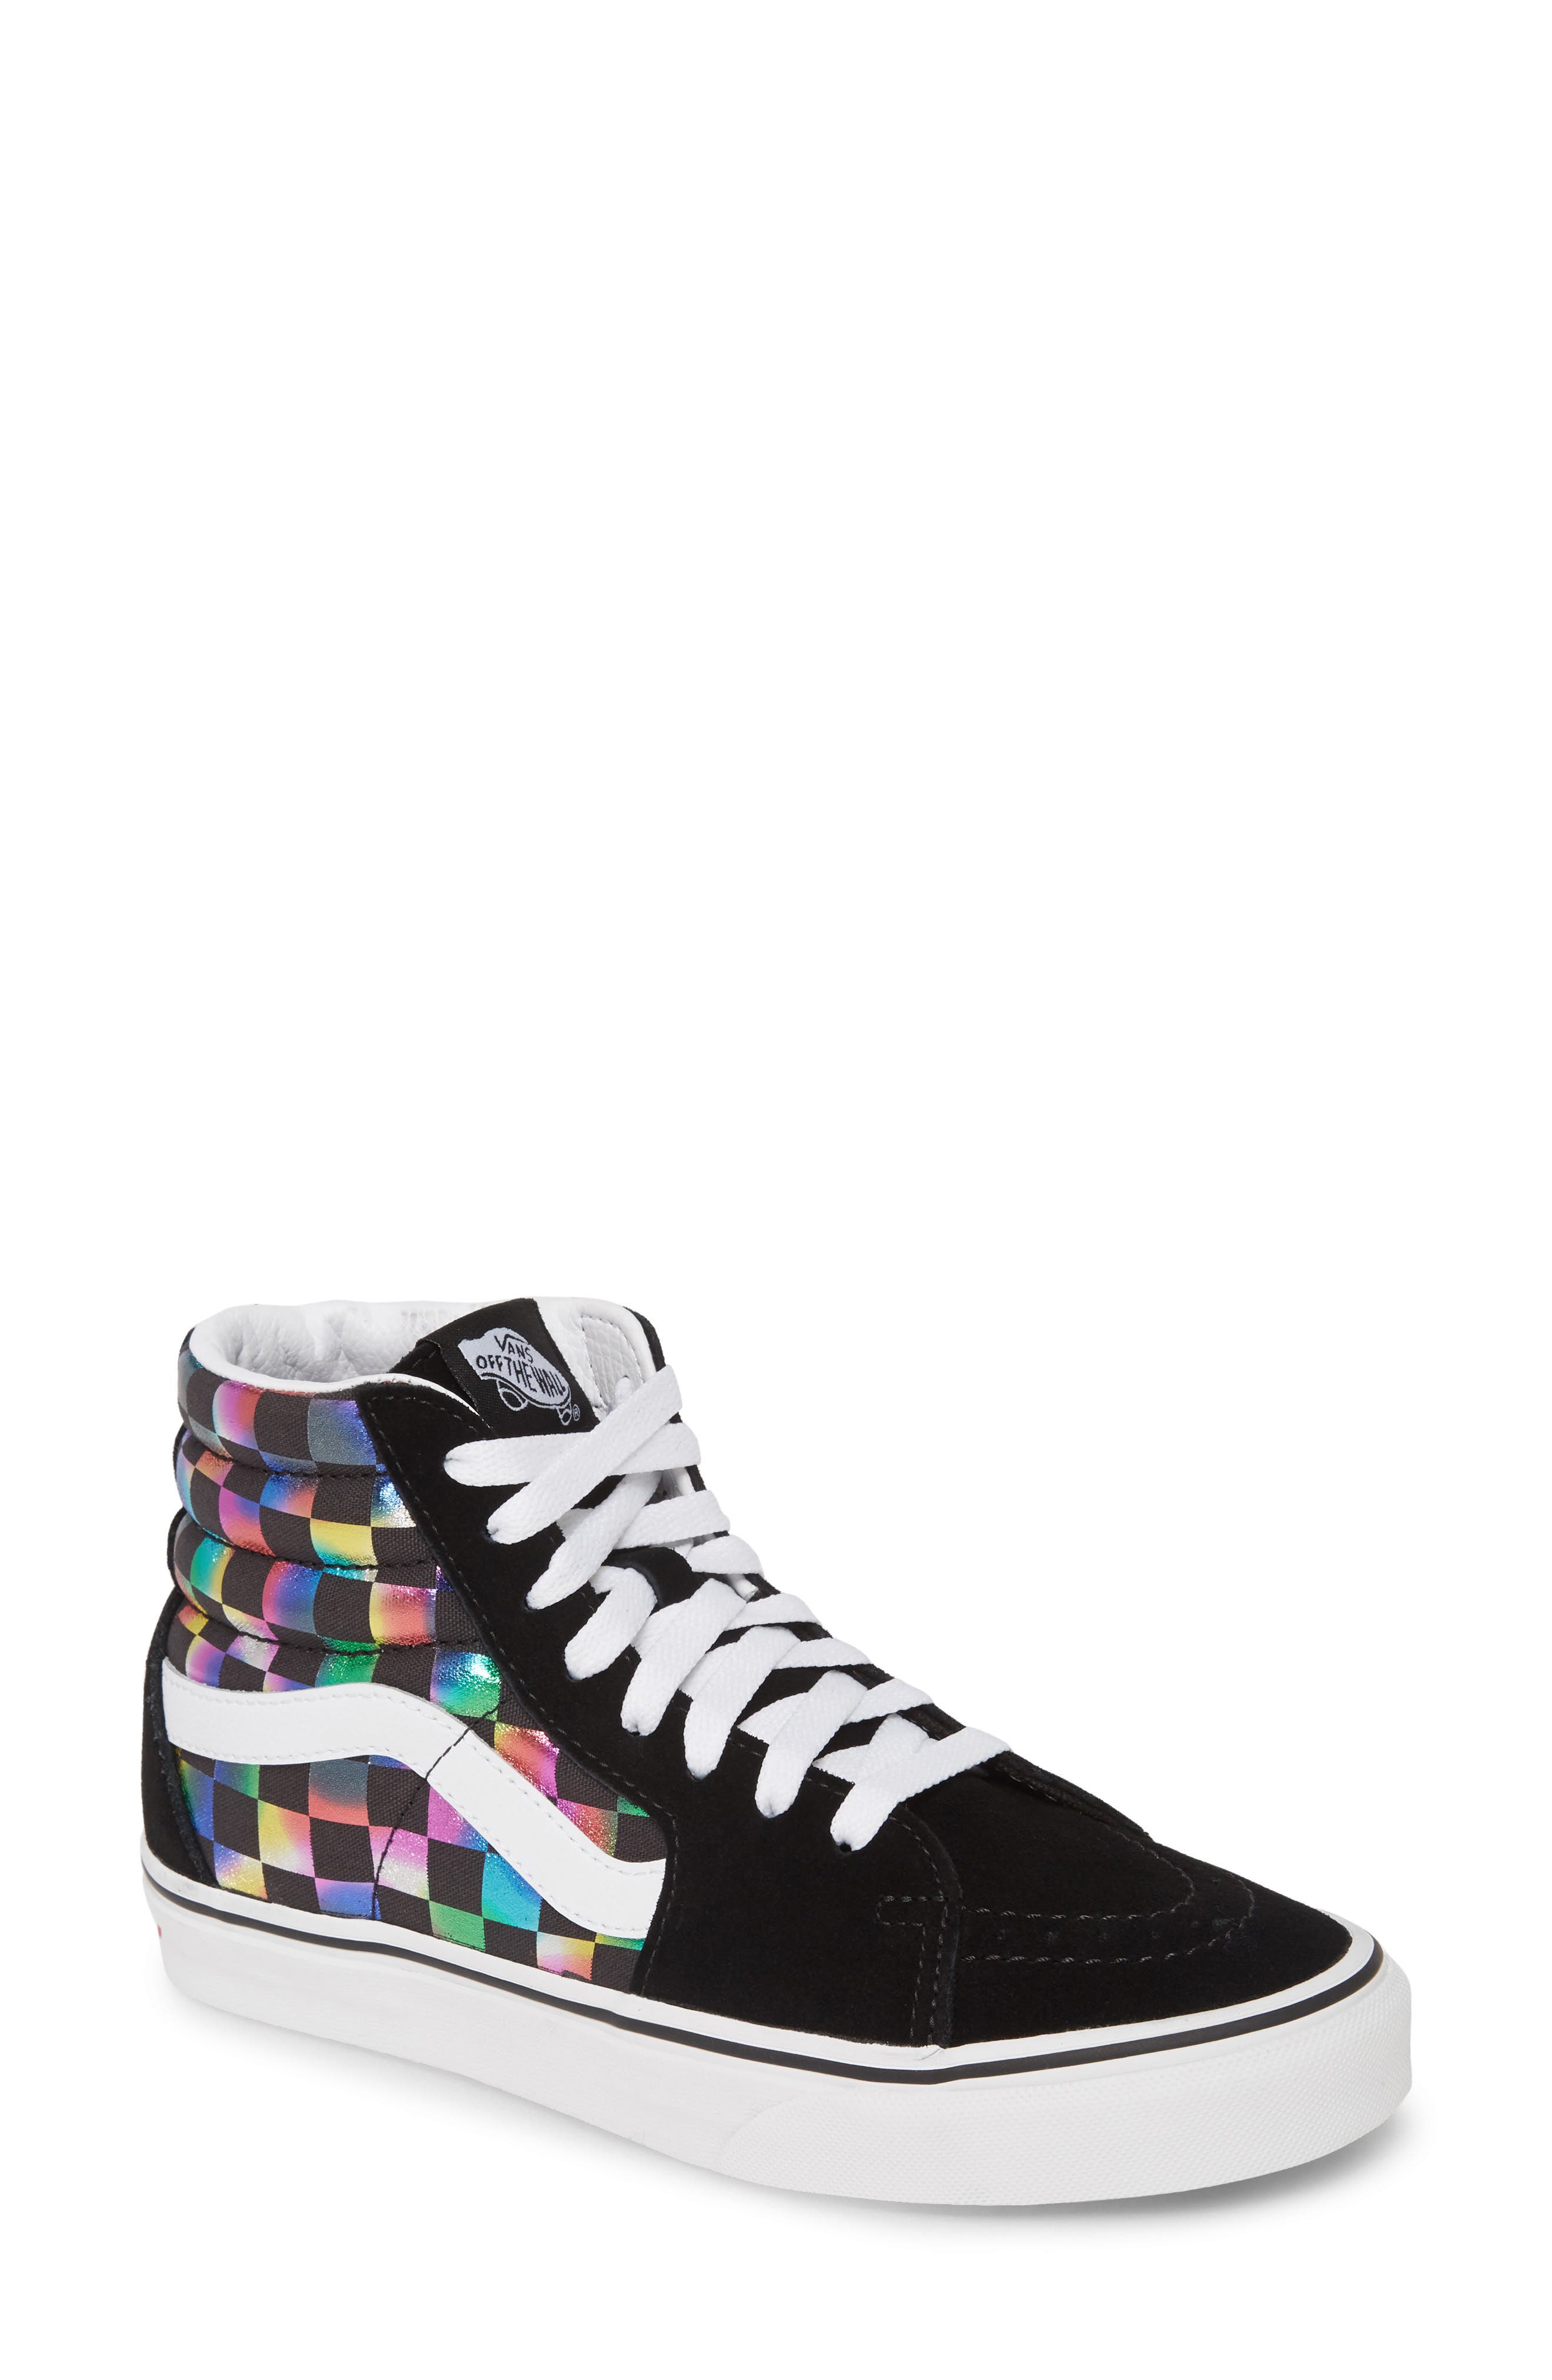 iridescent high top sneakers